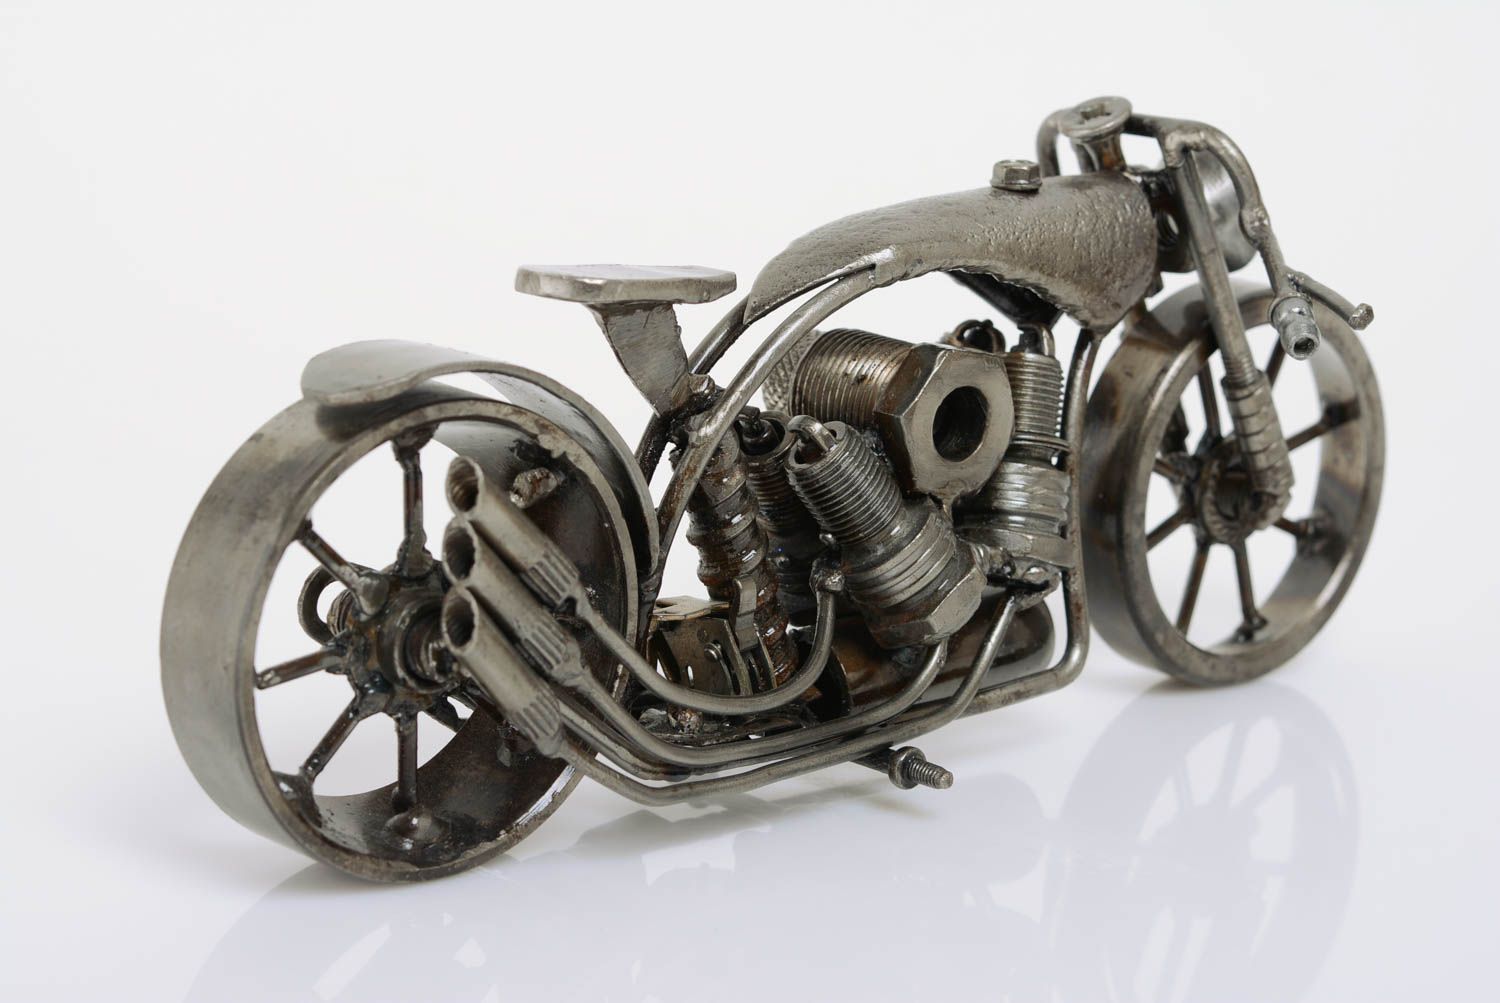 Фигурка мотоцикла из металла